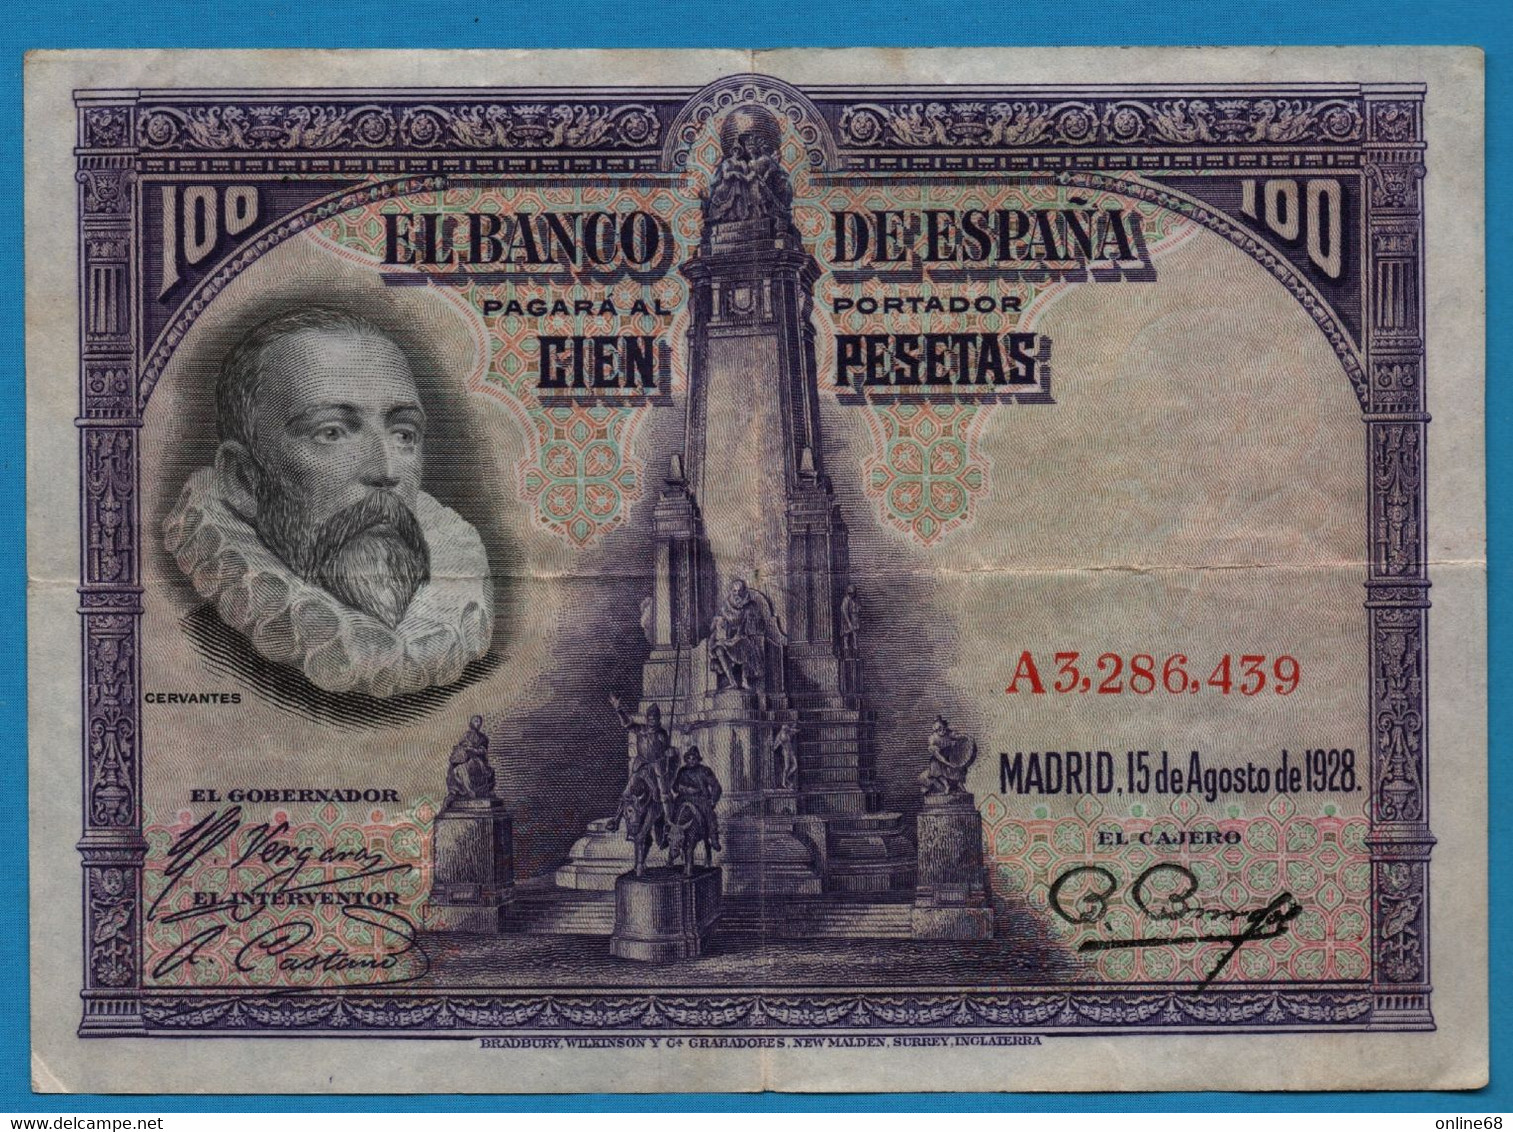 ESPANA 100 PESETAS 15.08.1928 # A3286439 P# 76 Miguel De Cervantes - 100 Pesetas